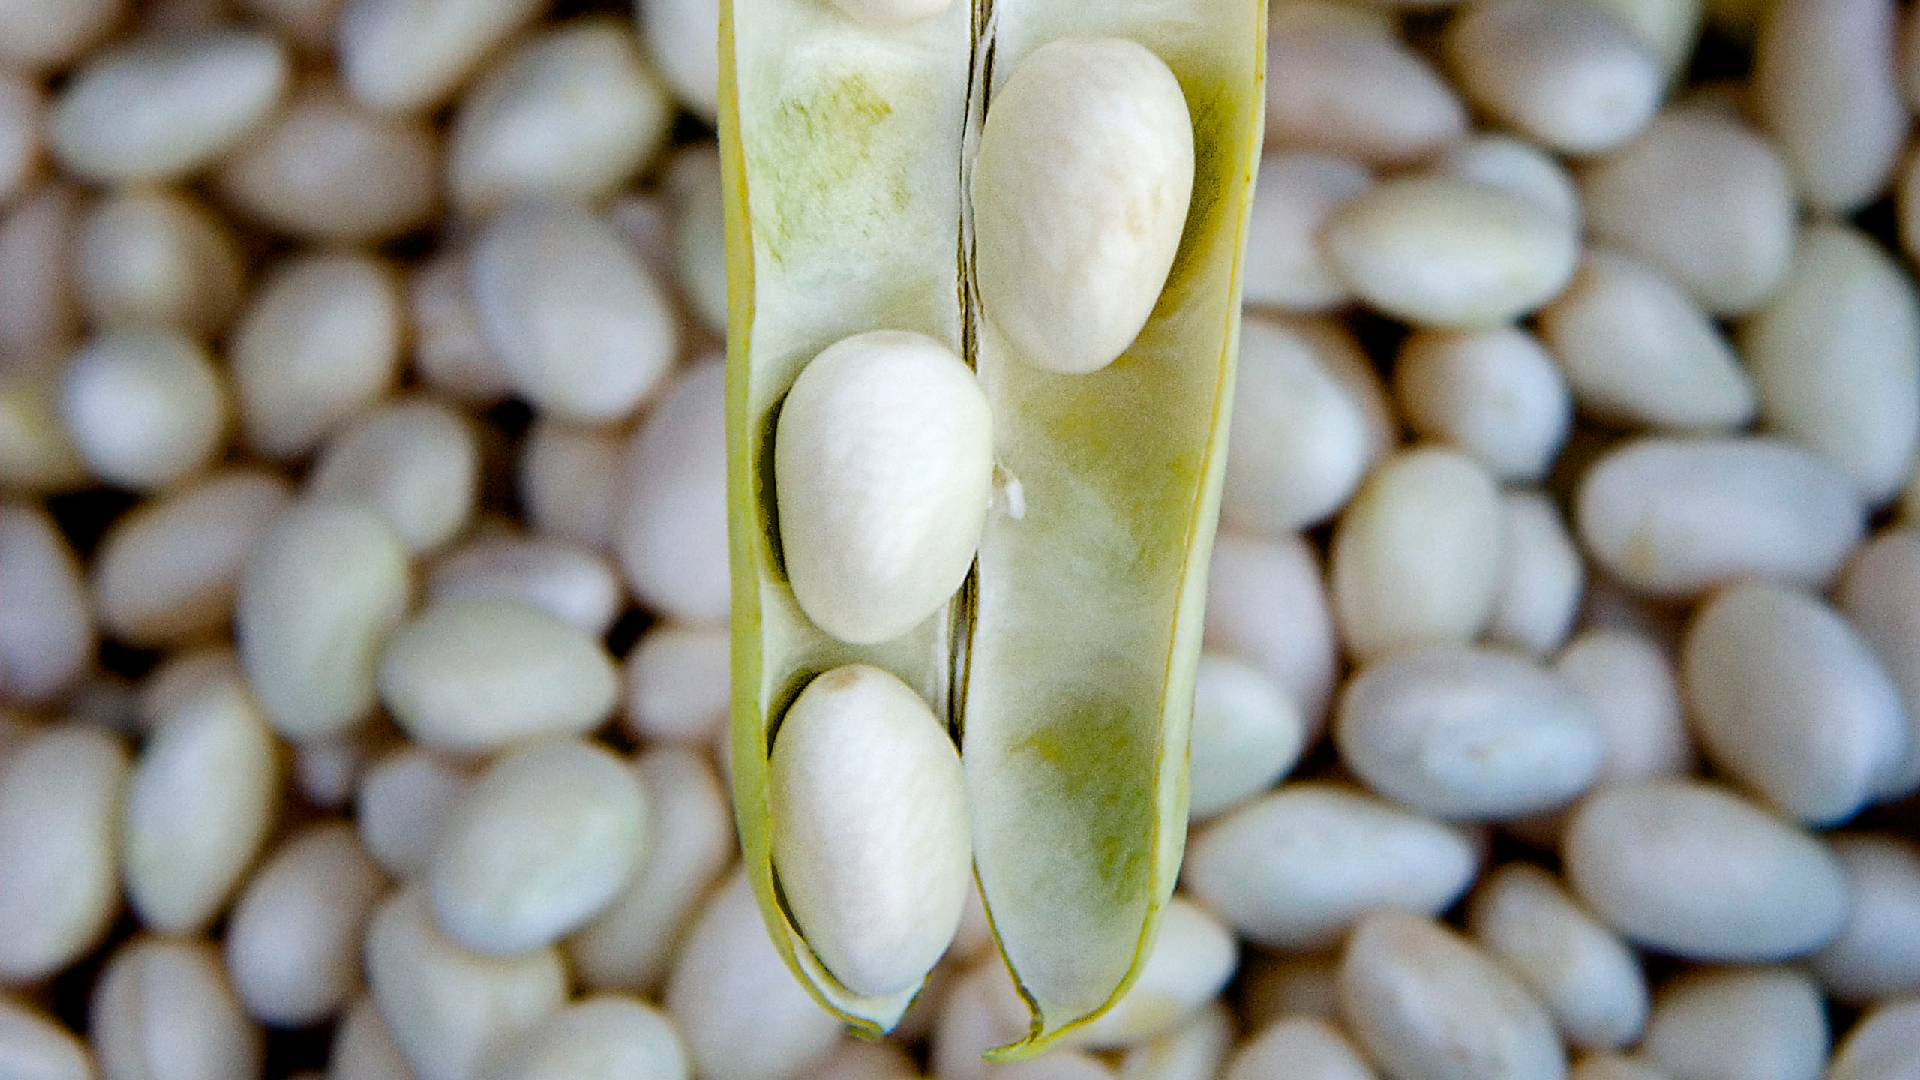 Days in Praise of Potxa Beans